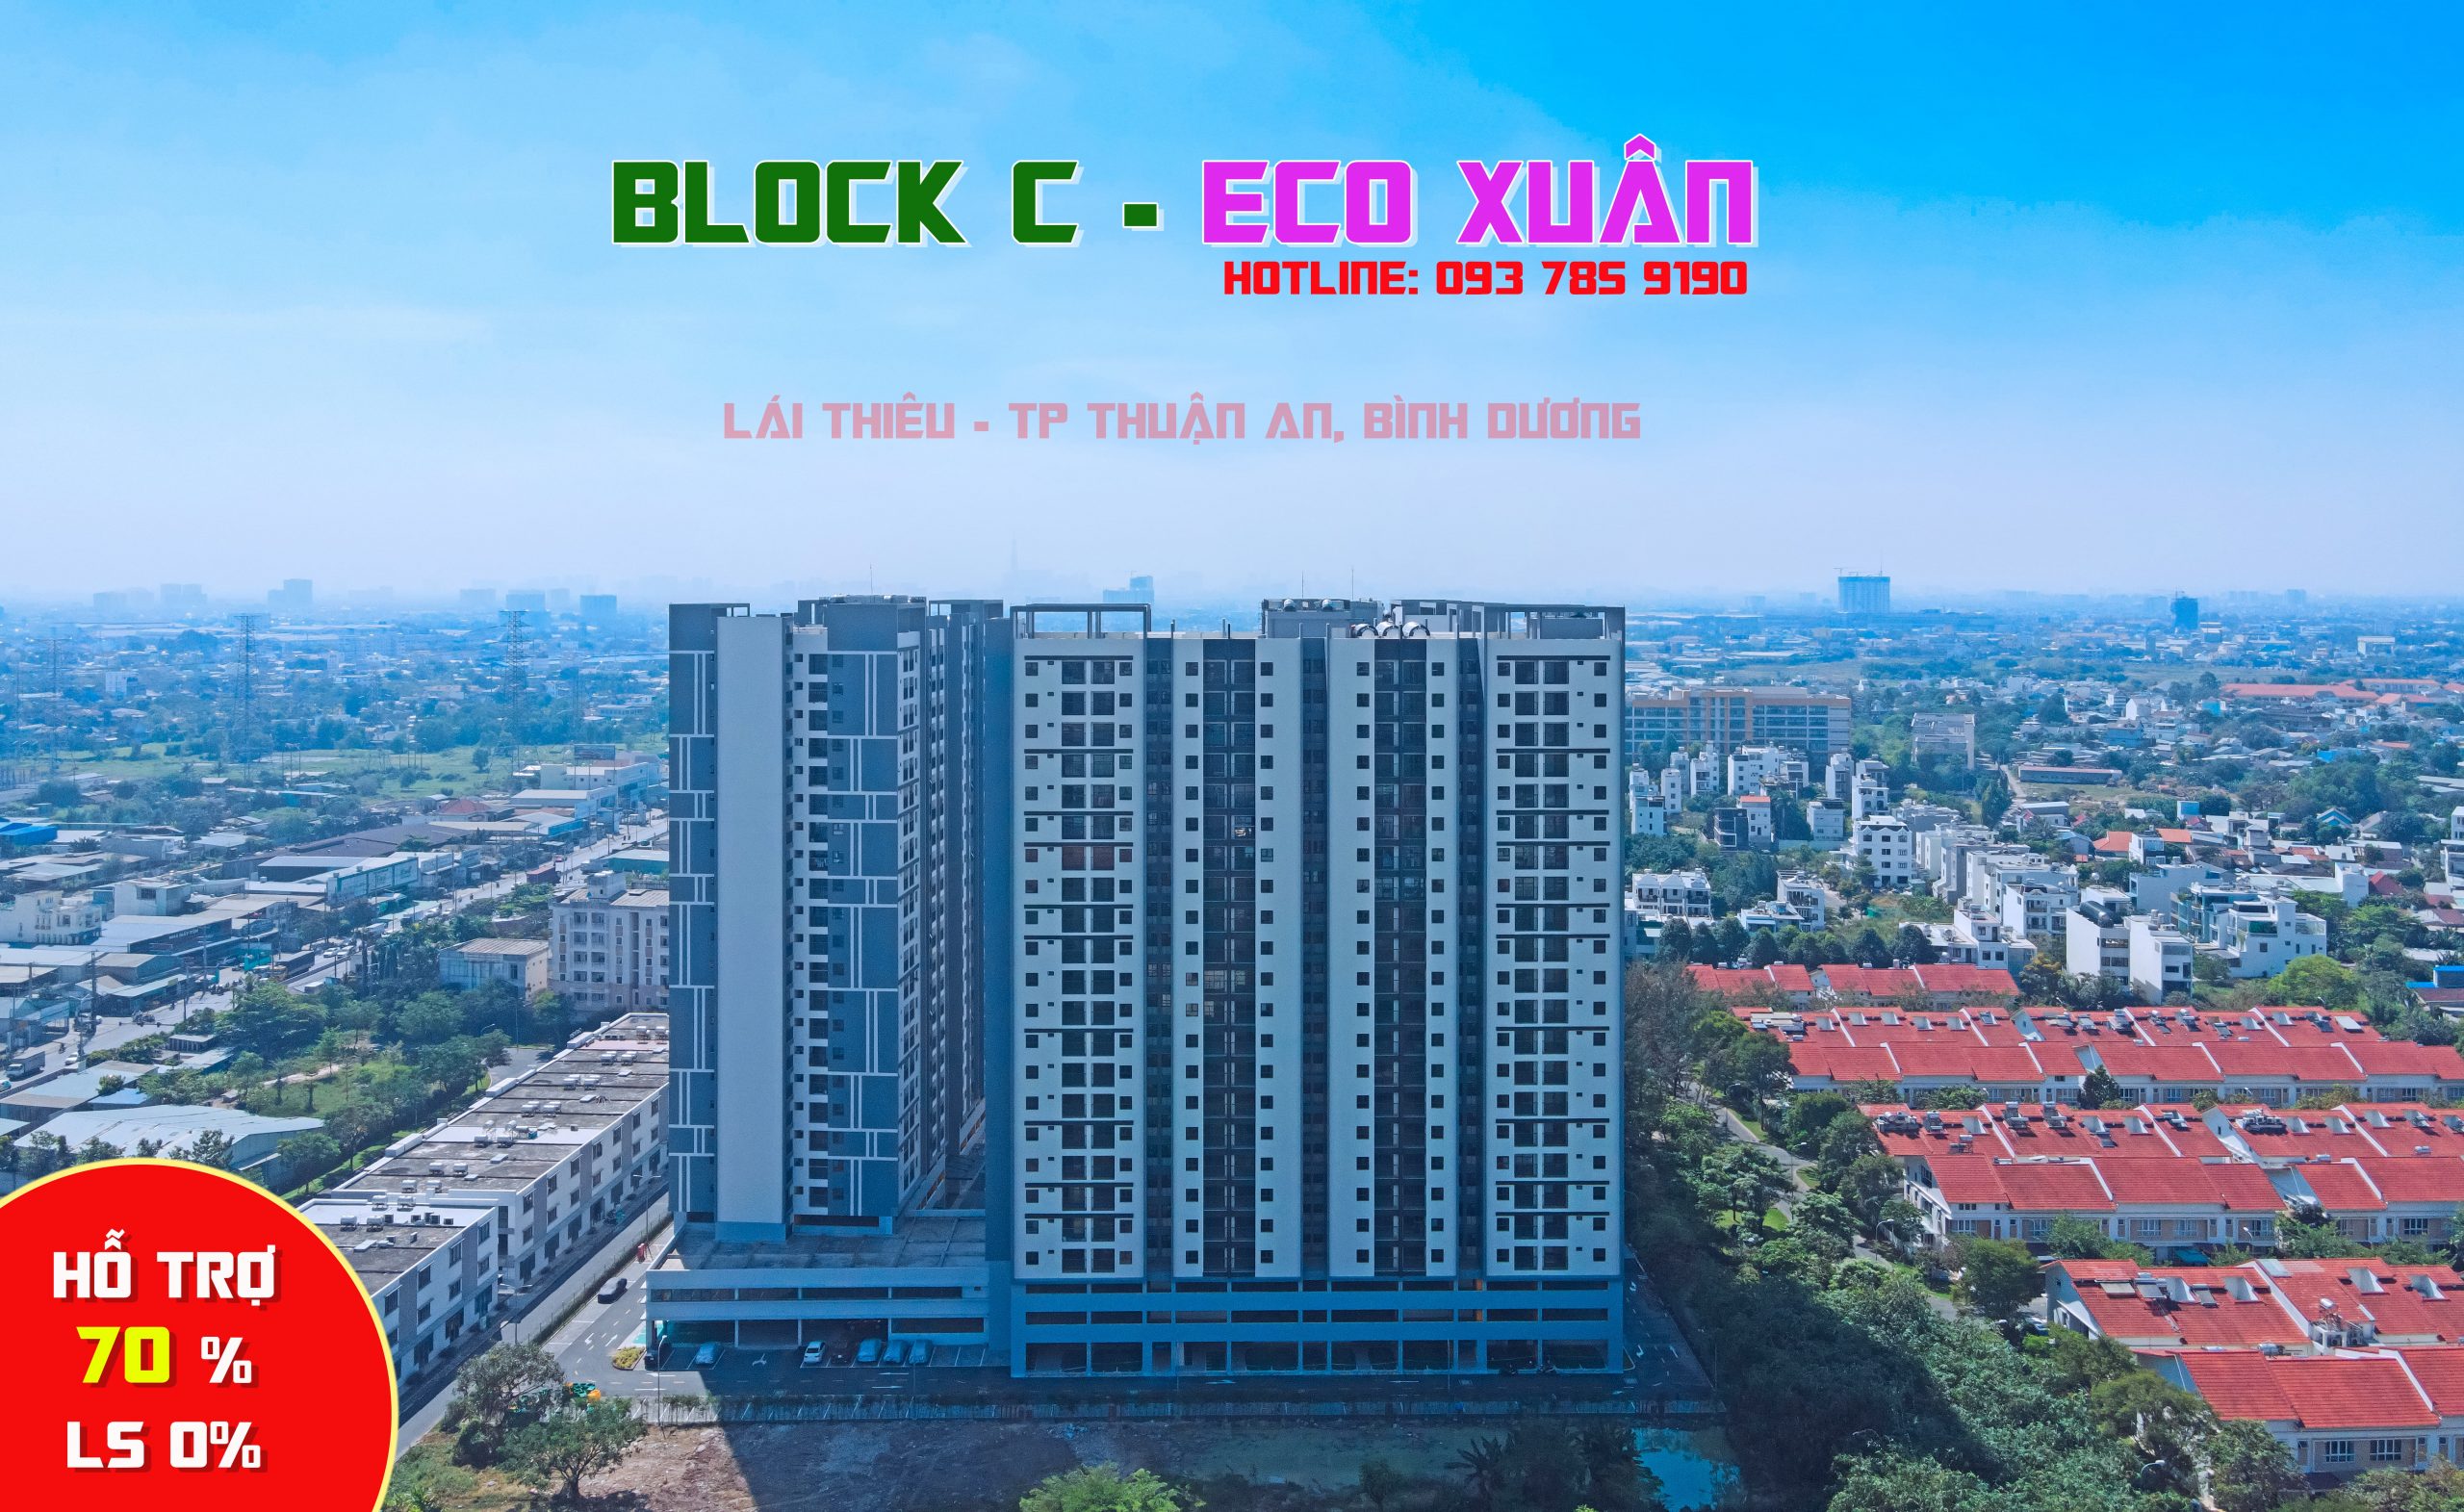 Eco Xuân Block C - Ttrong thời gian hoàn thiện 12/2022